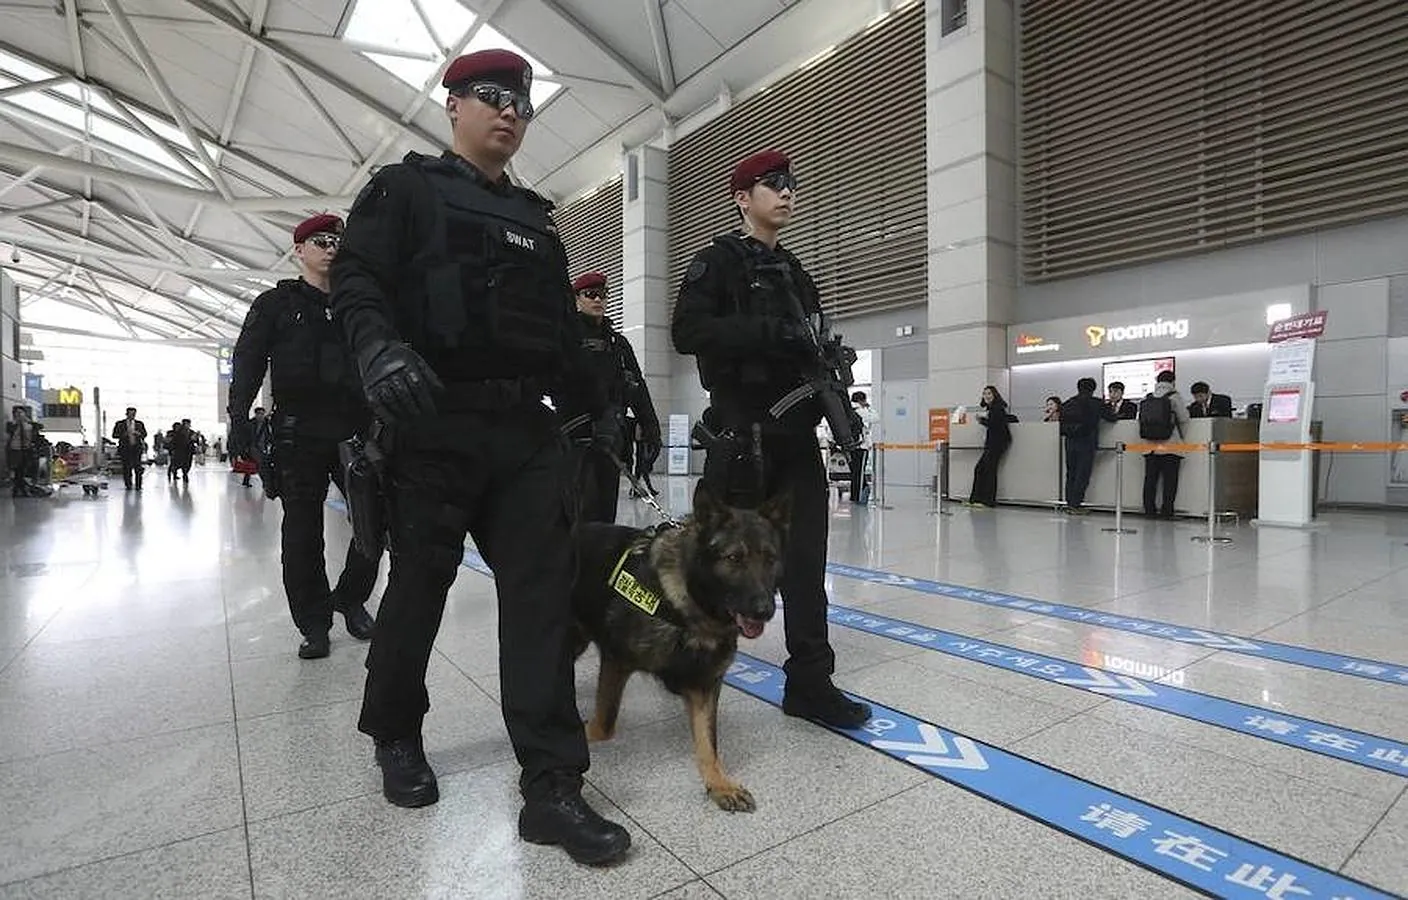 Policías surcoreanos patrullan por el aeropuerto internacional de Incheon en Seúl. La seguridad ha aumentado drásticamente tras los atentados